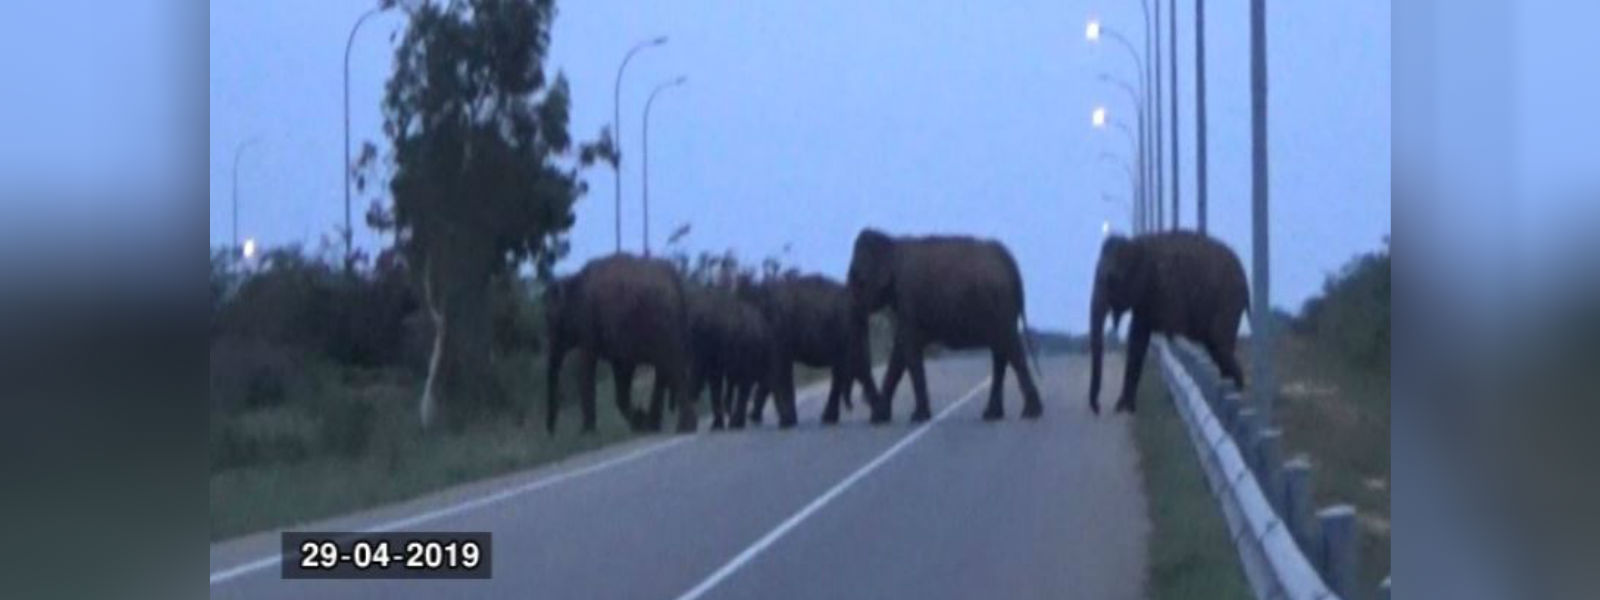 Dehigolla elephants:Electric fence needed urgently